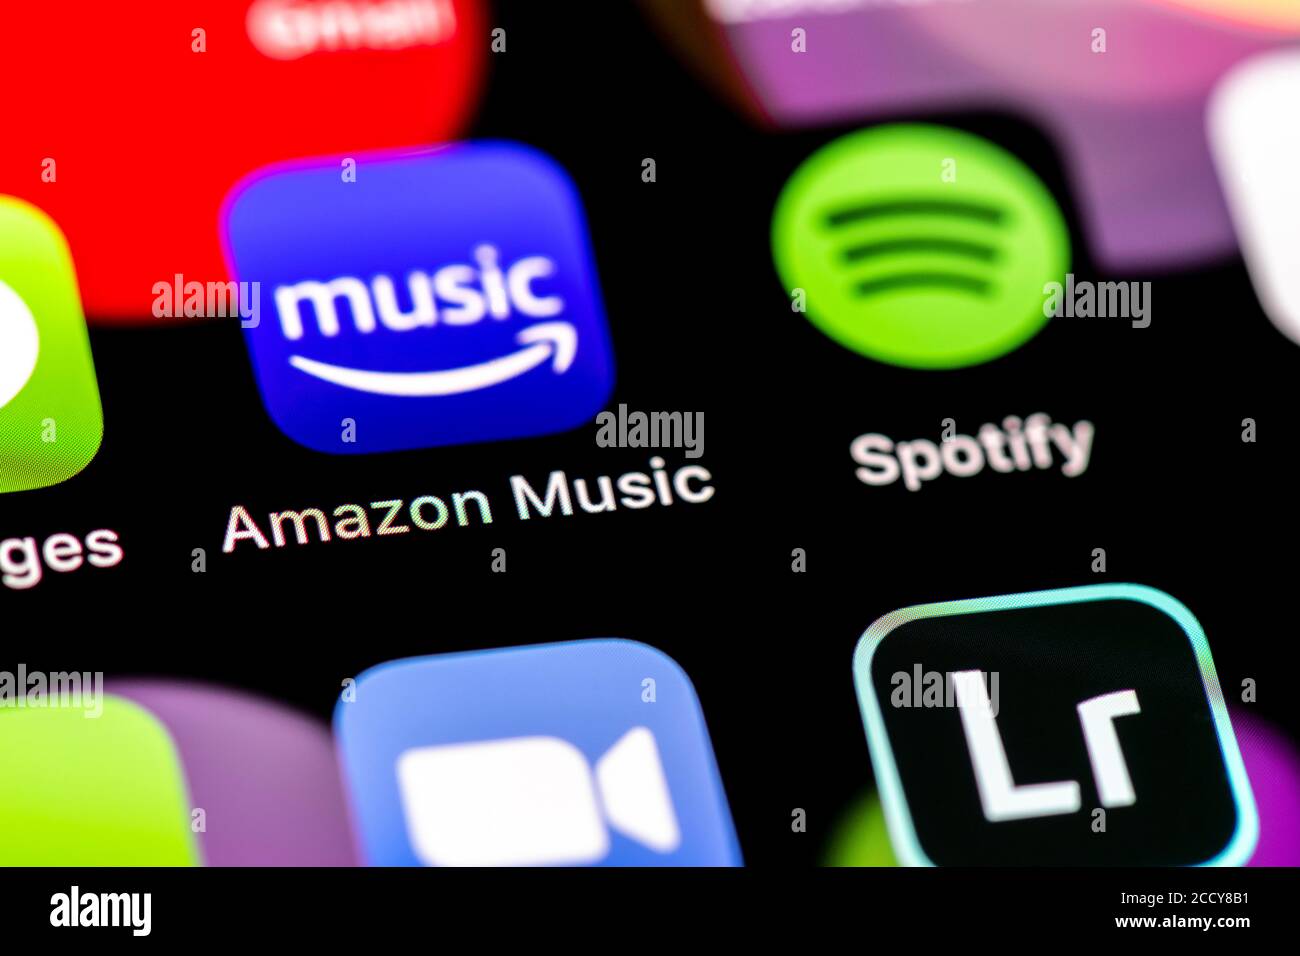 Amazon Music et Spotify, diffusion de musique, icônes d'application sur un écran de téléphone mobile, iPhone, smartphone, gros plan, plein écran Banque D'Images